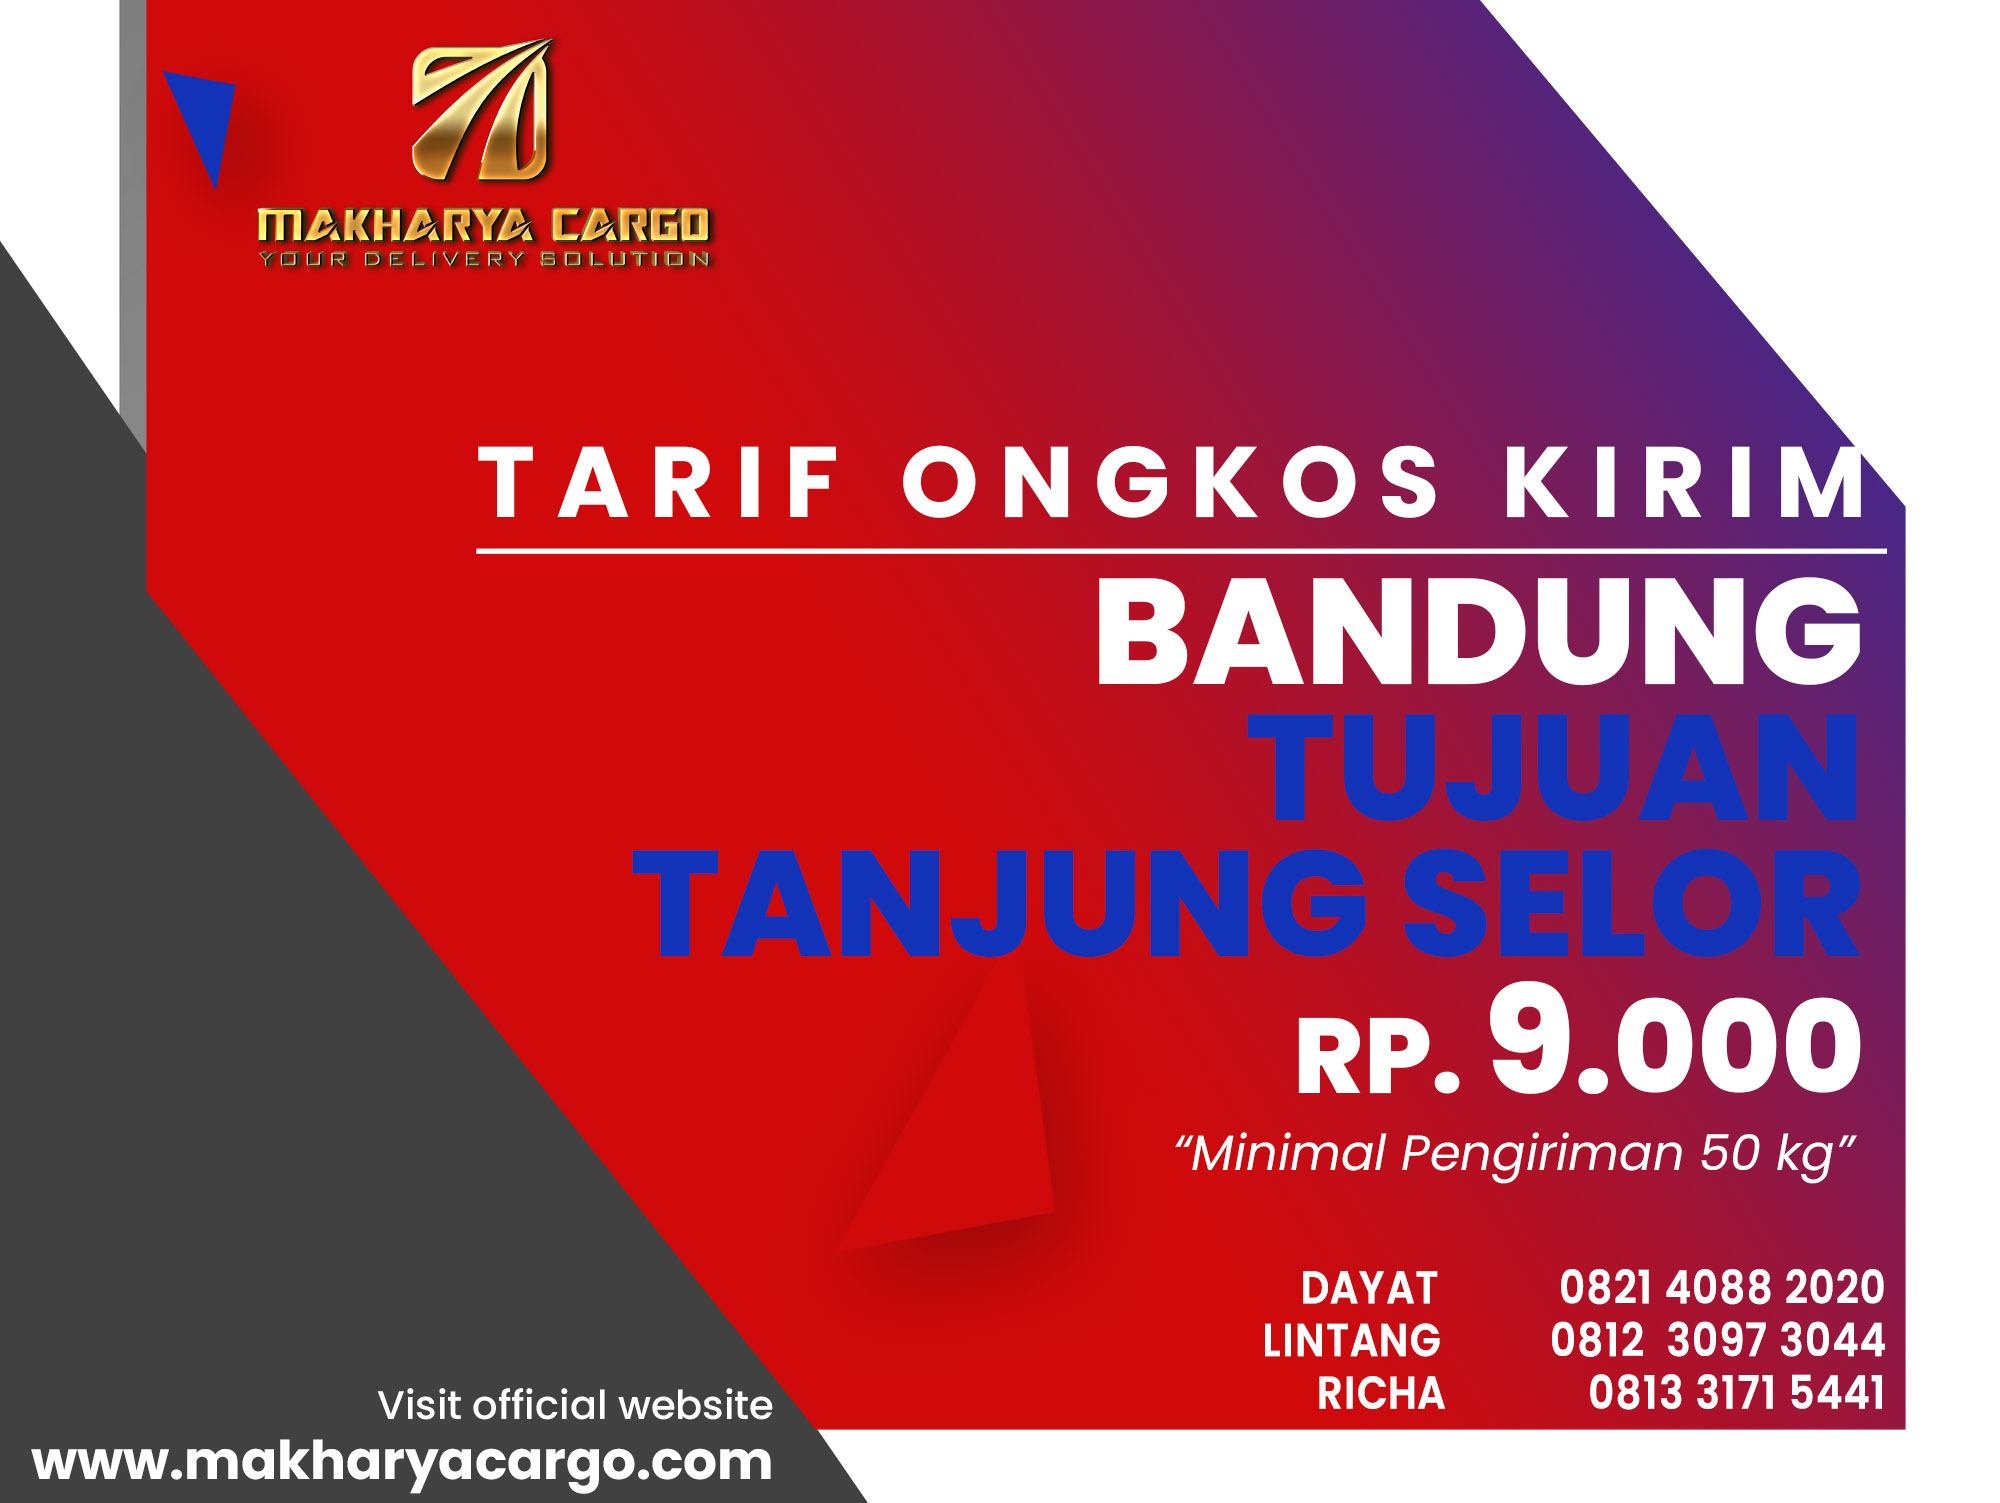 Tarif Ongkos Kirim Bandung Tanjung Selor